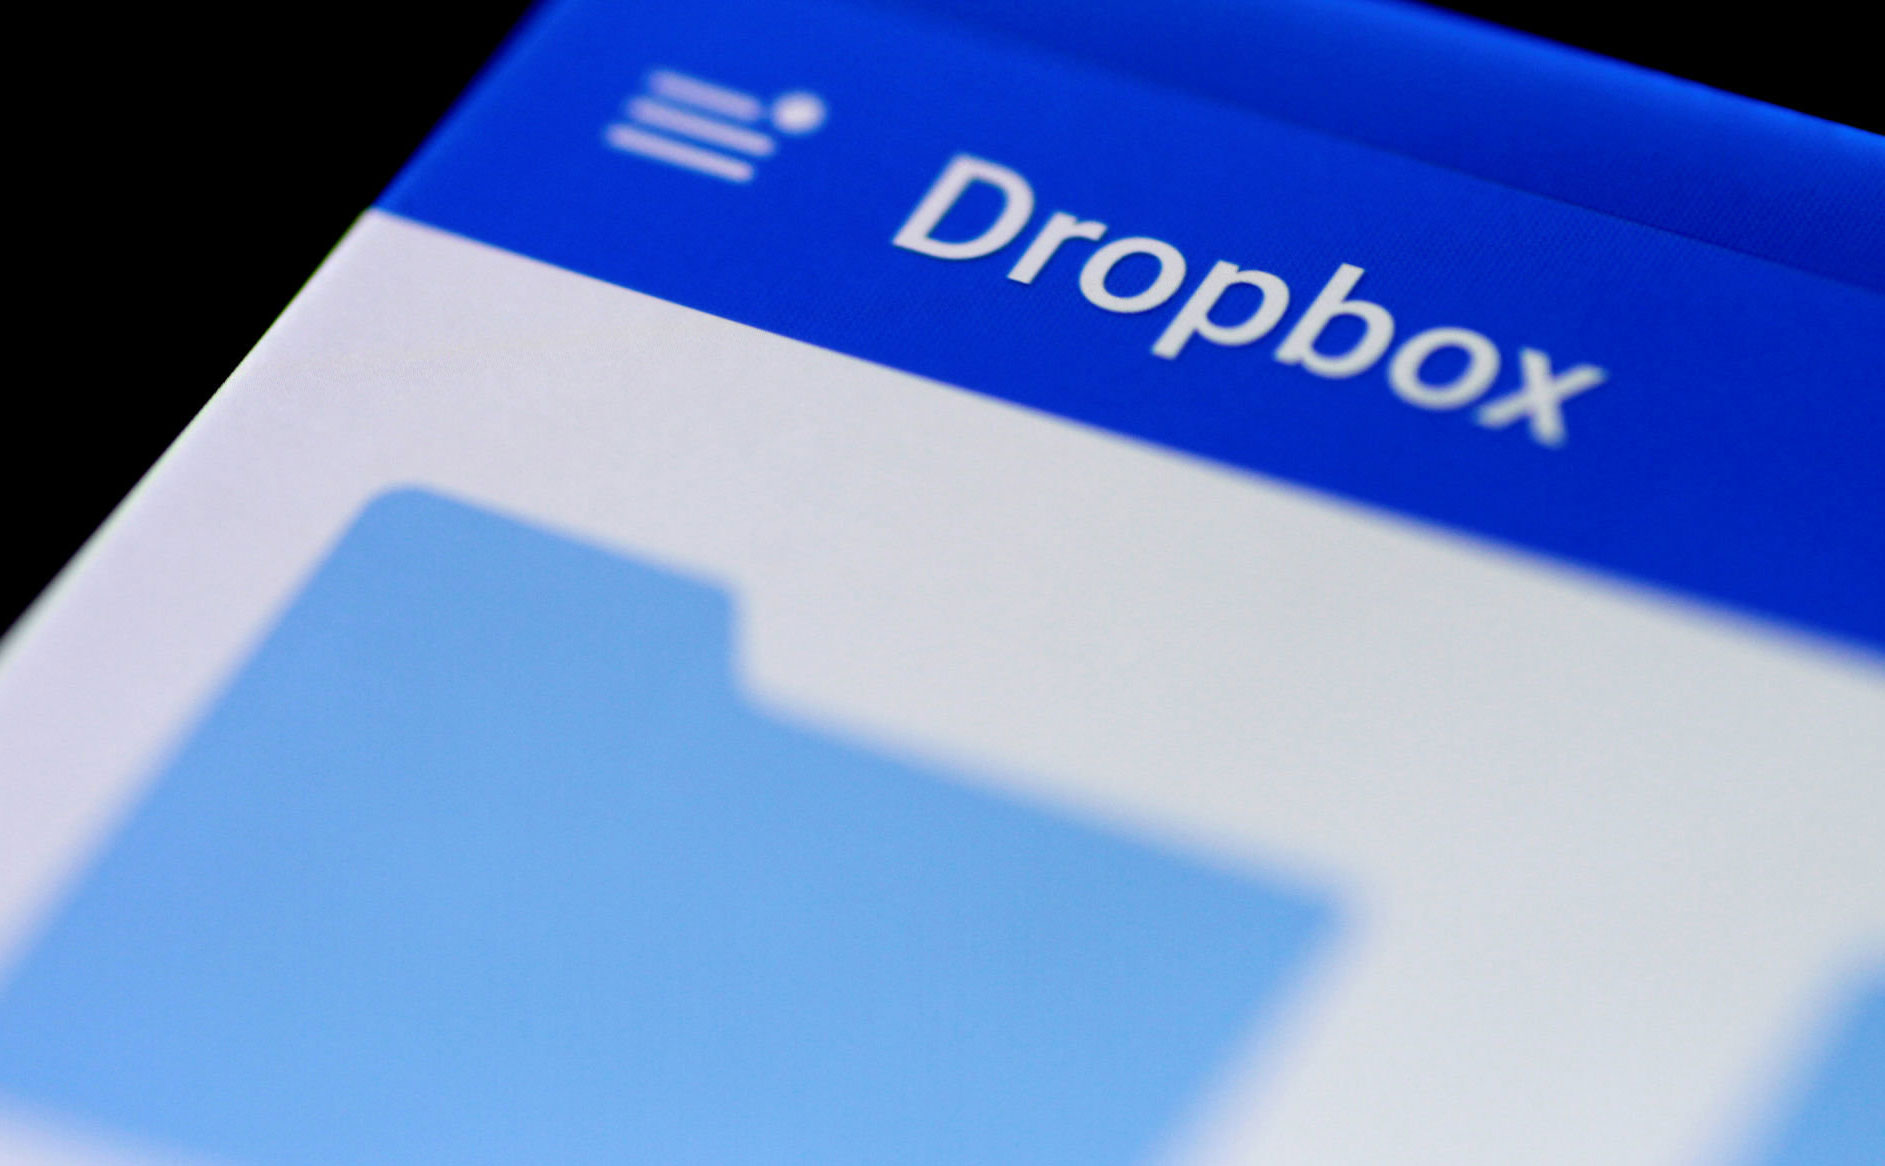 Dropbox giới hạn người dùng miễn phí chỉ có thể link tài khoản với cùng lúc 3 thiết bị